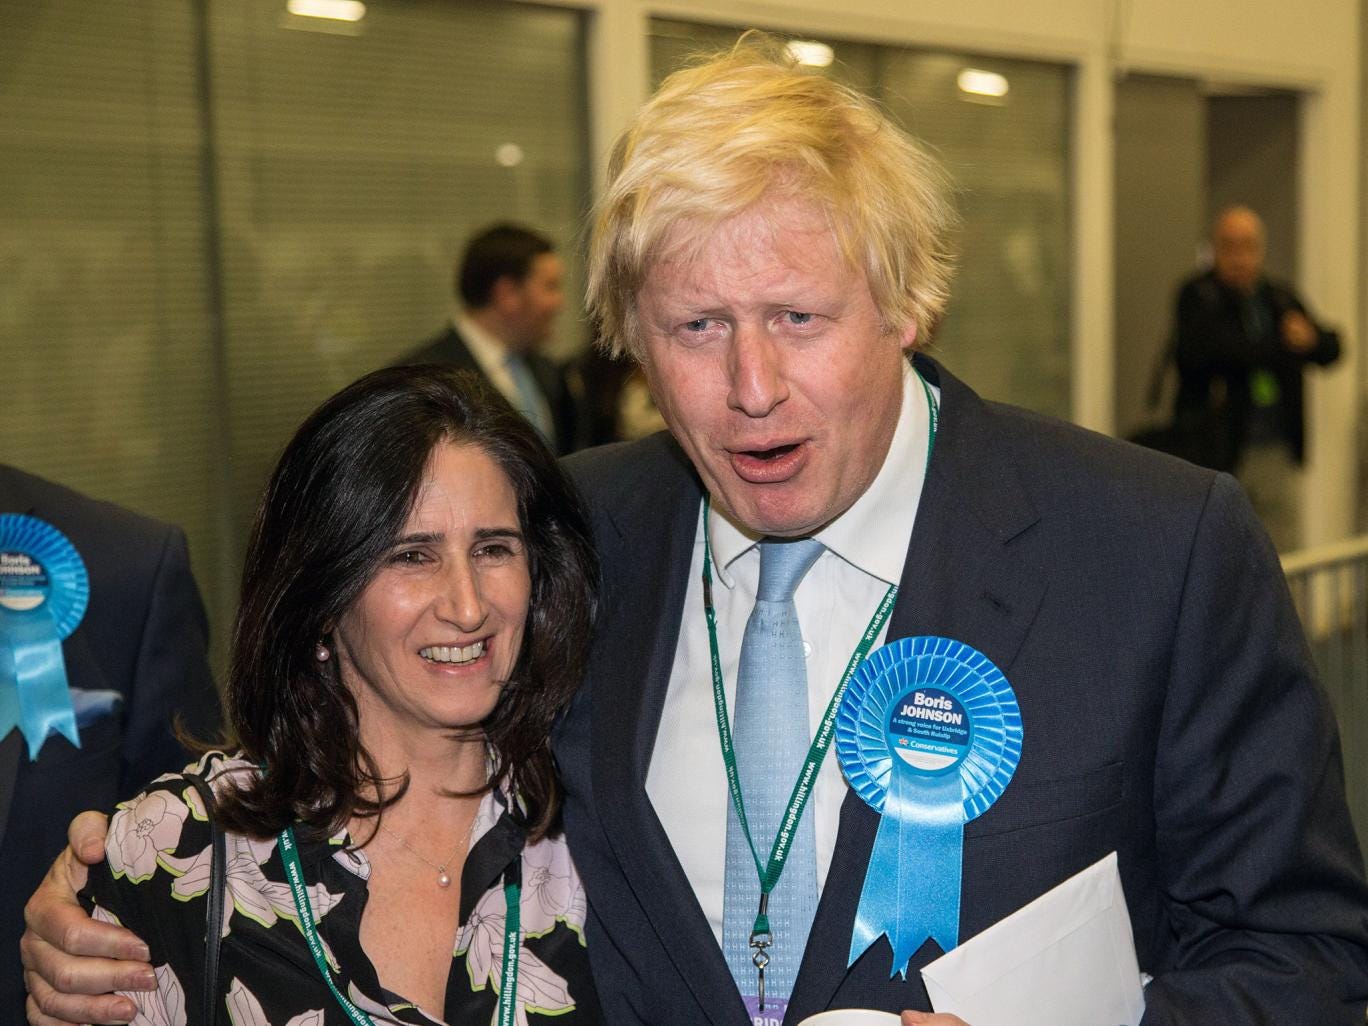 Marina Wheeler and Boris Johnson